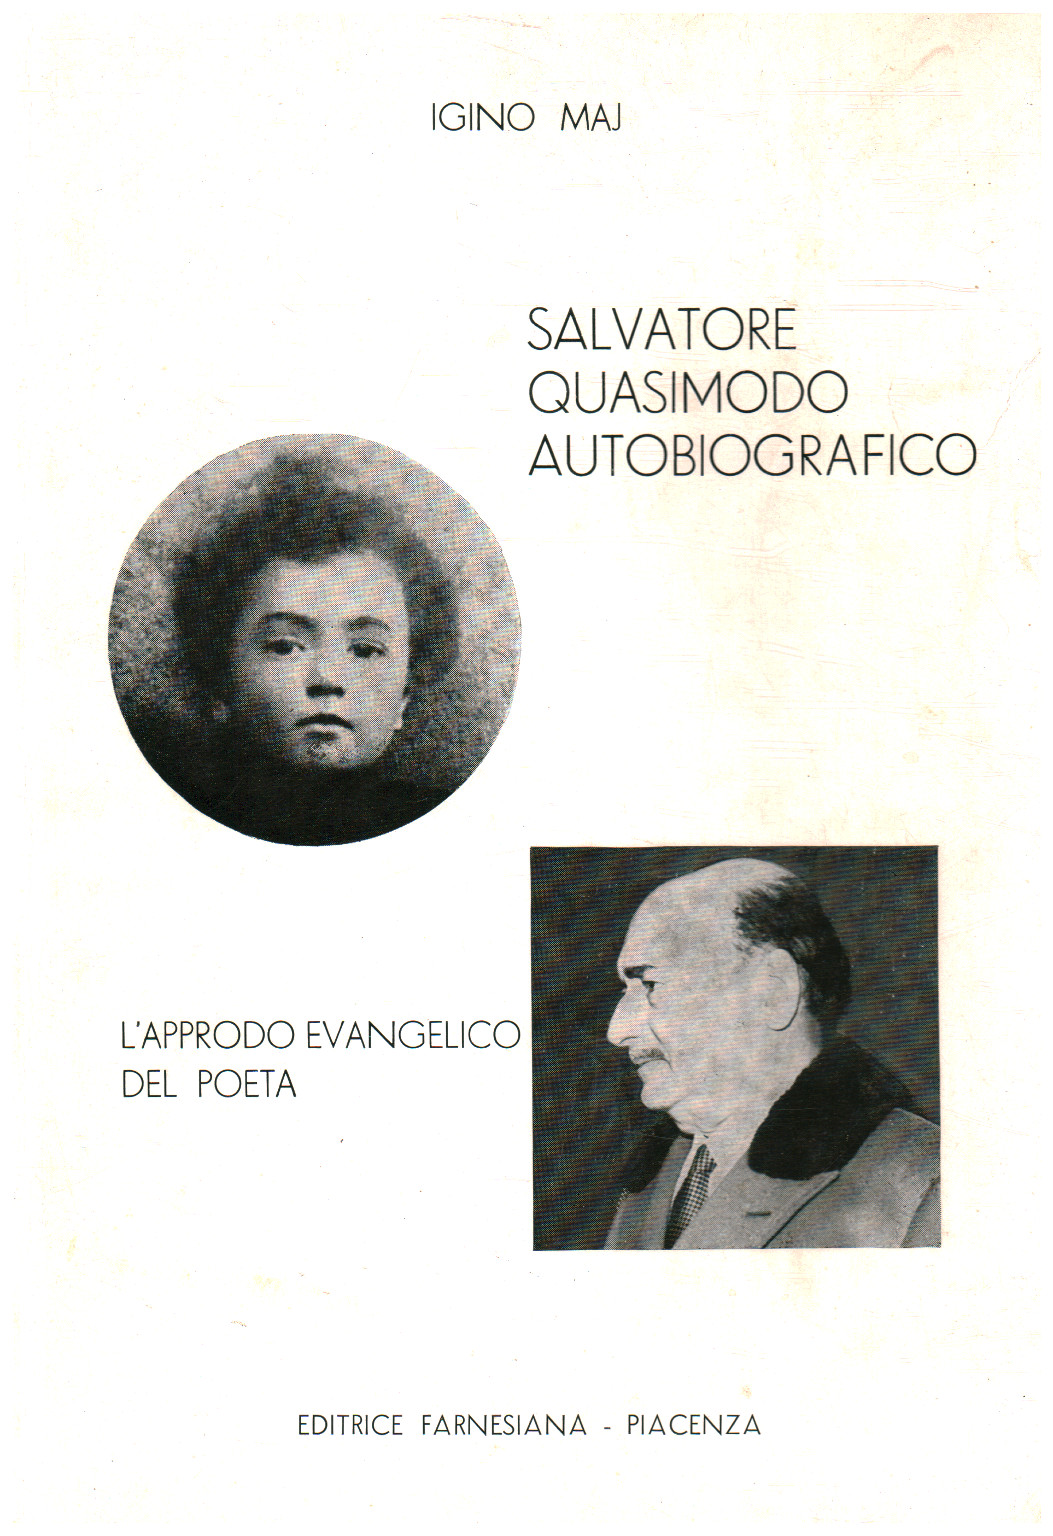 Salvatore Quasimodo autobiográfico, s.a.